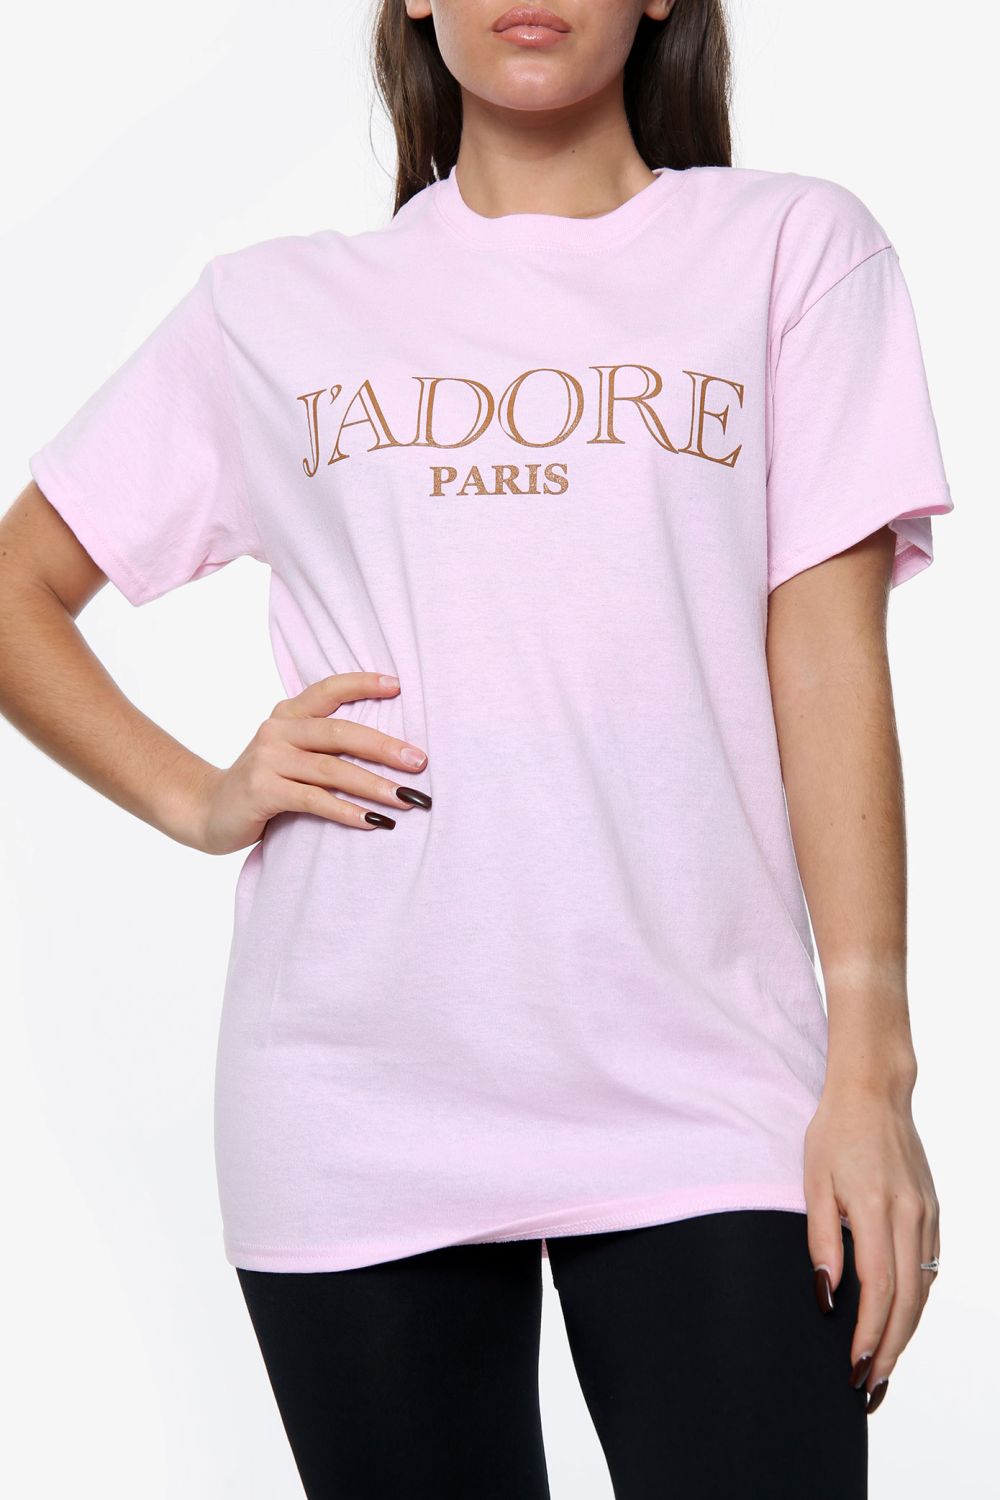 afstemning kompleksitet absurd J'adore Paris Slogan Oversized T-Shirt | Missi Clothing Wholesale UK